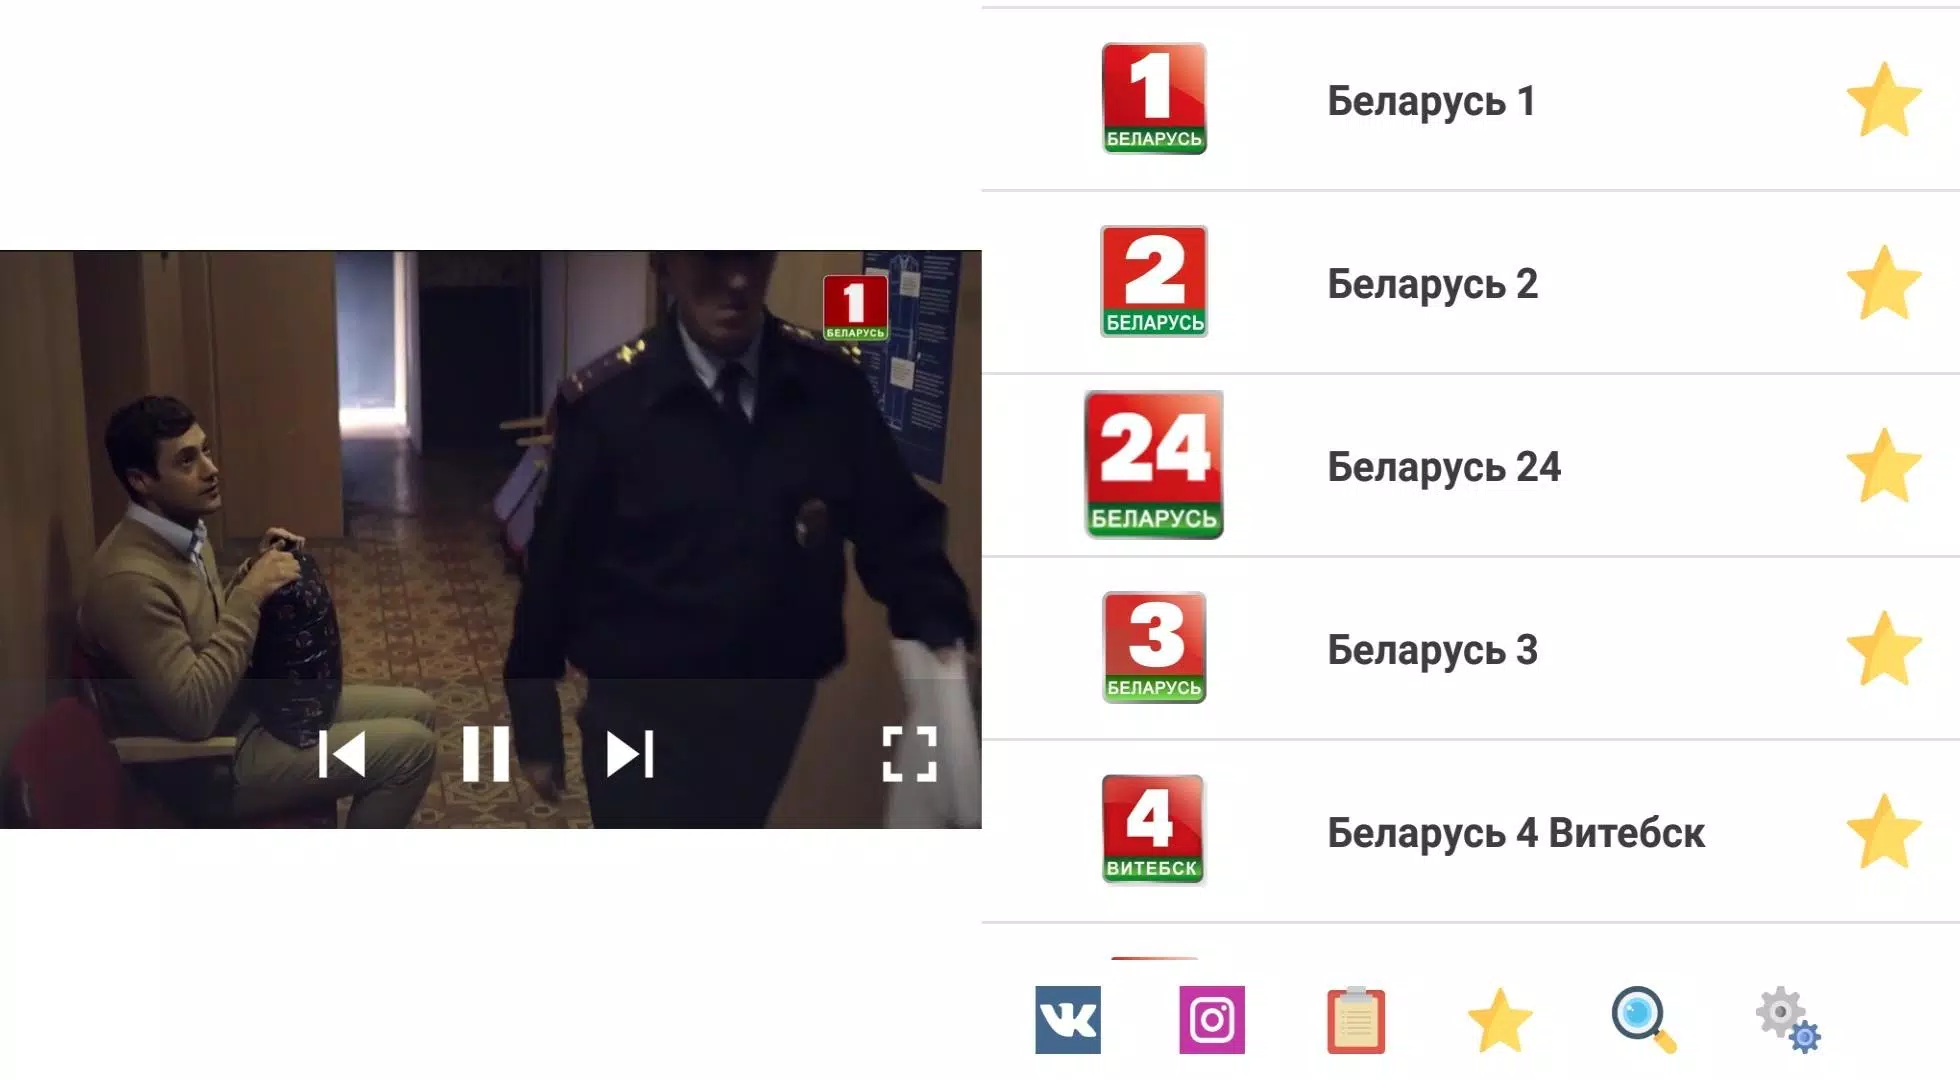 TV - Online Belarus APK for Android Download